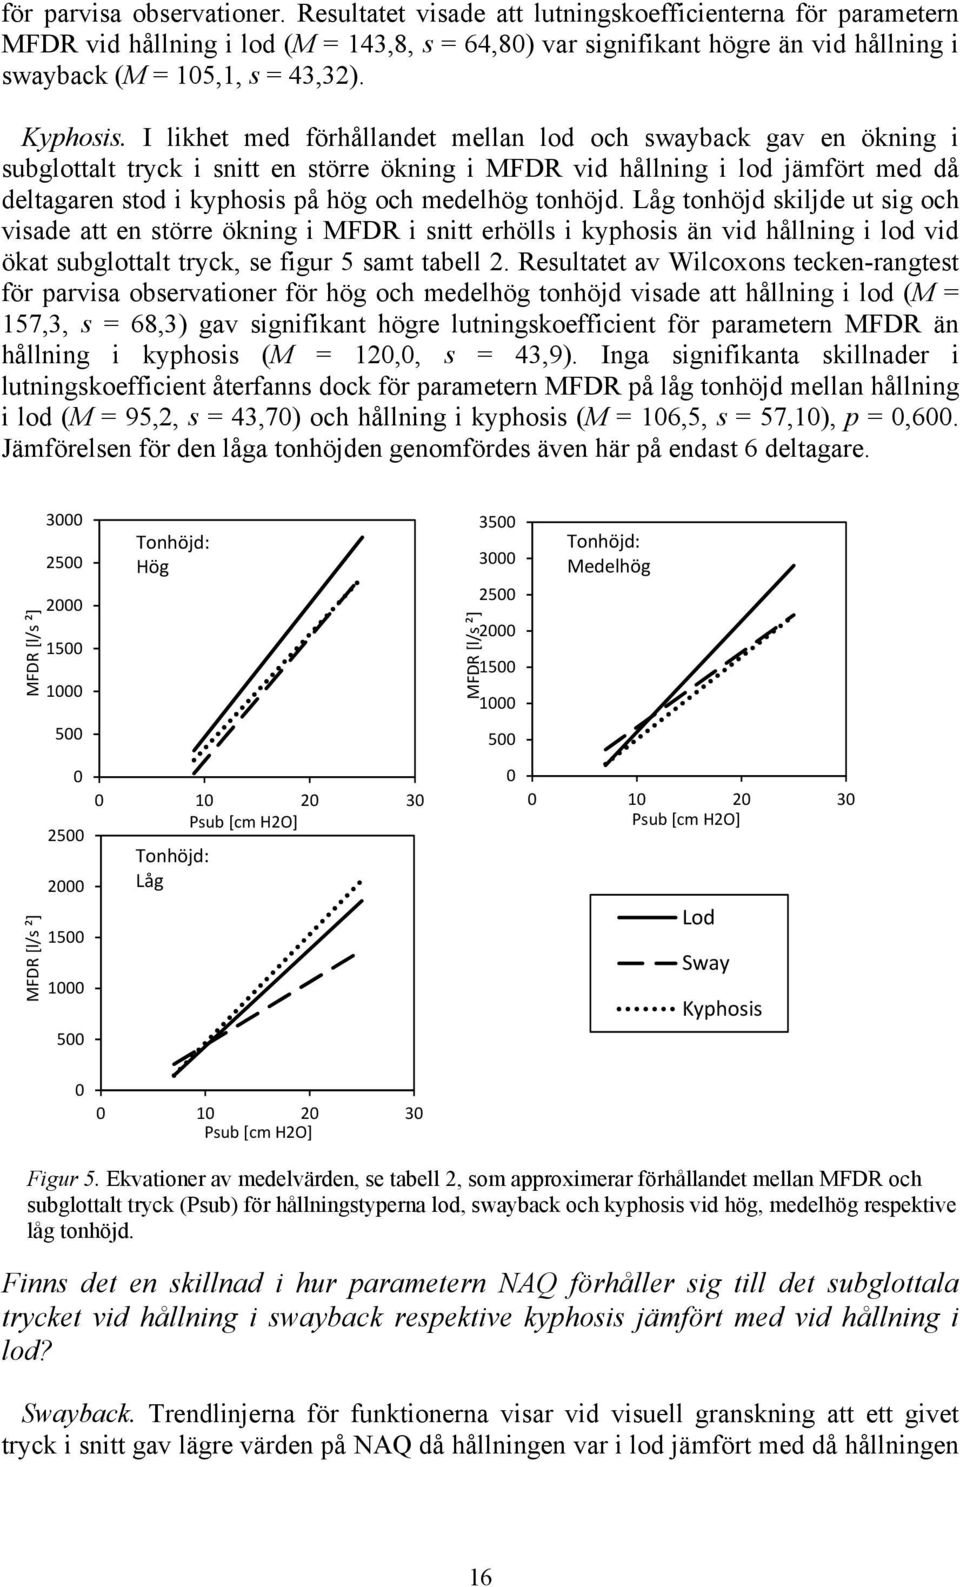 I likhet med förhållandet mellan lod och swayback gav en ökning i subglottalt tryck i snitt en större ökning i MFDR vid hållning i lod jämfört med då deltagaren stod i kyphosis på hög och medelhög